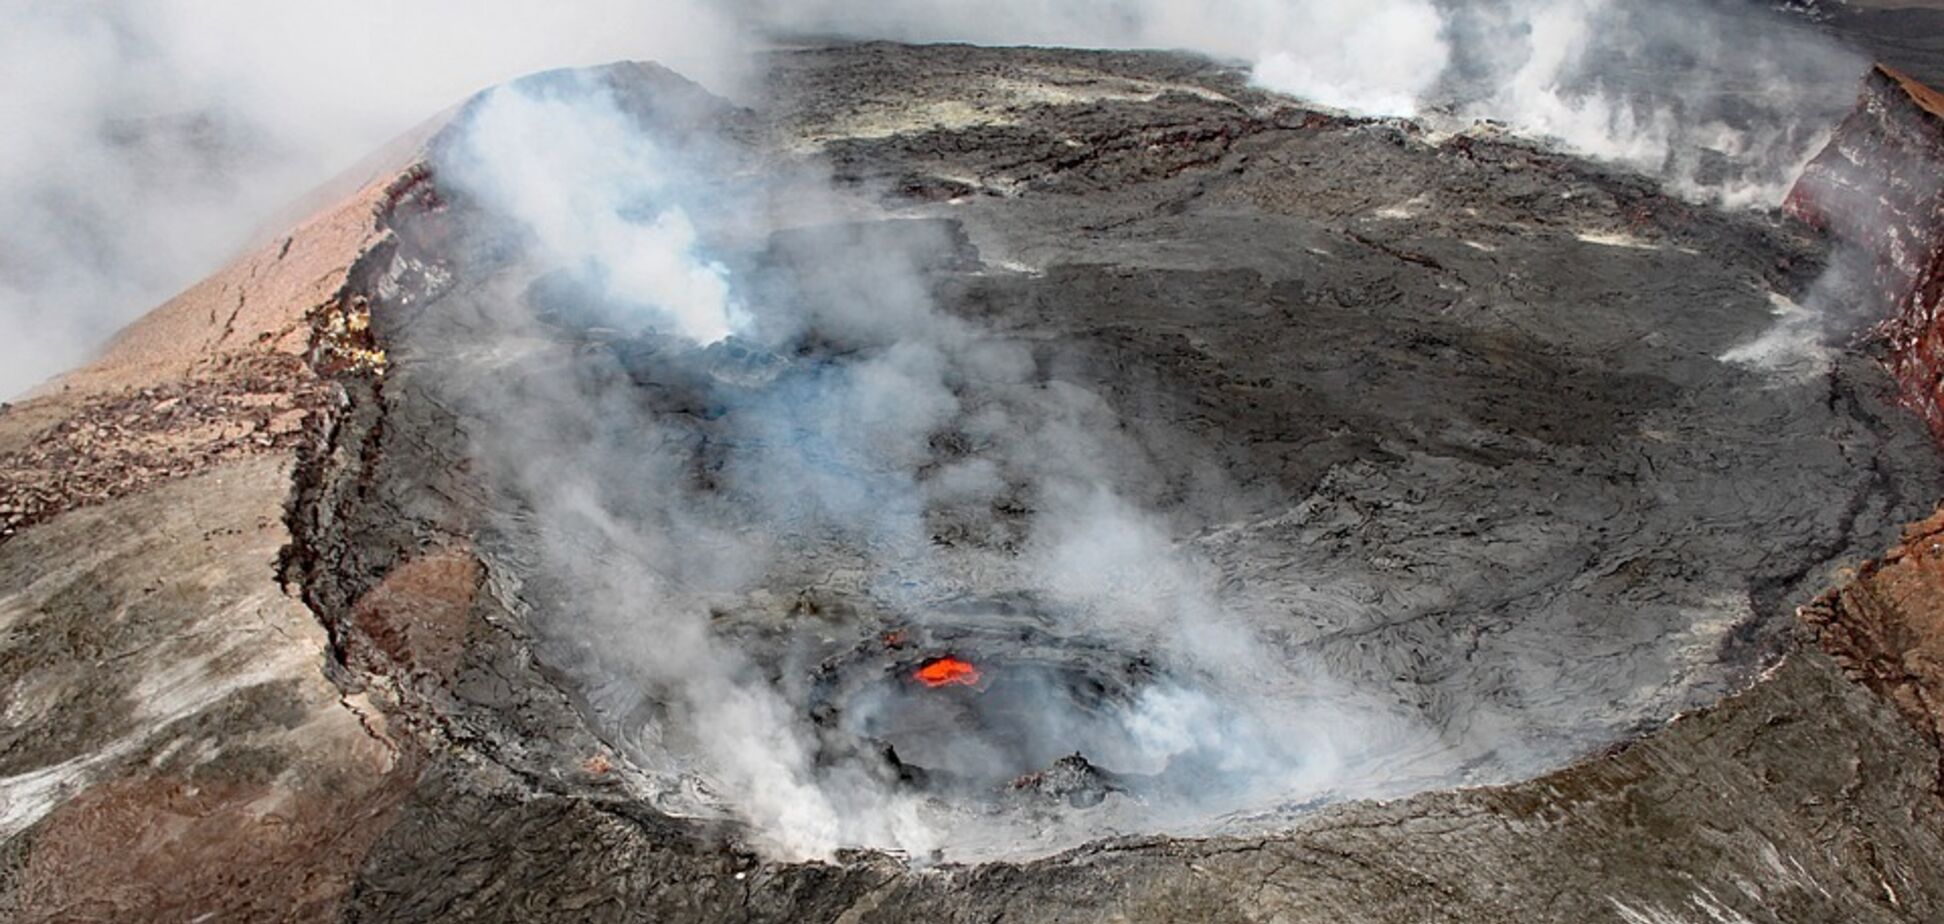 Летел 20 метров: на Гавайях турист попал в жуткое ЧП с вулканом